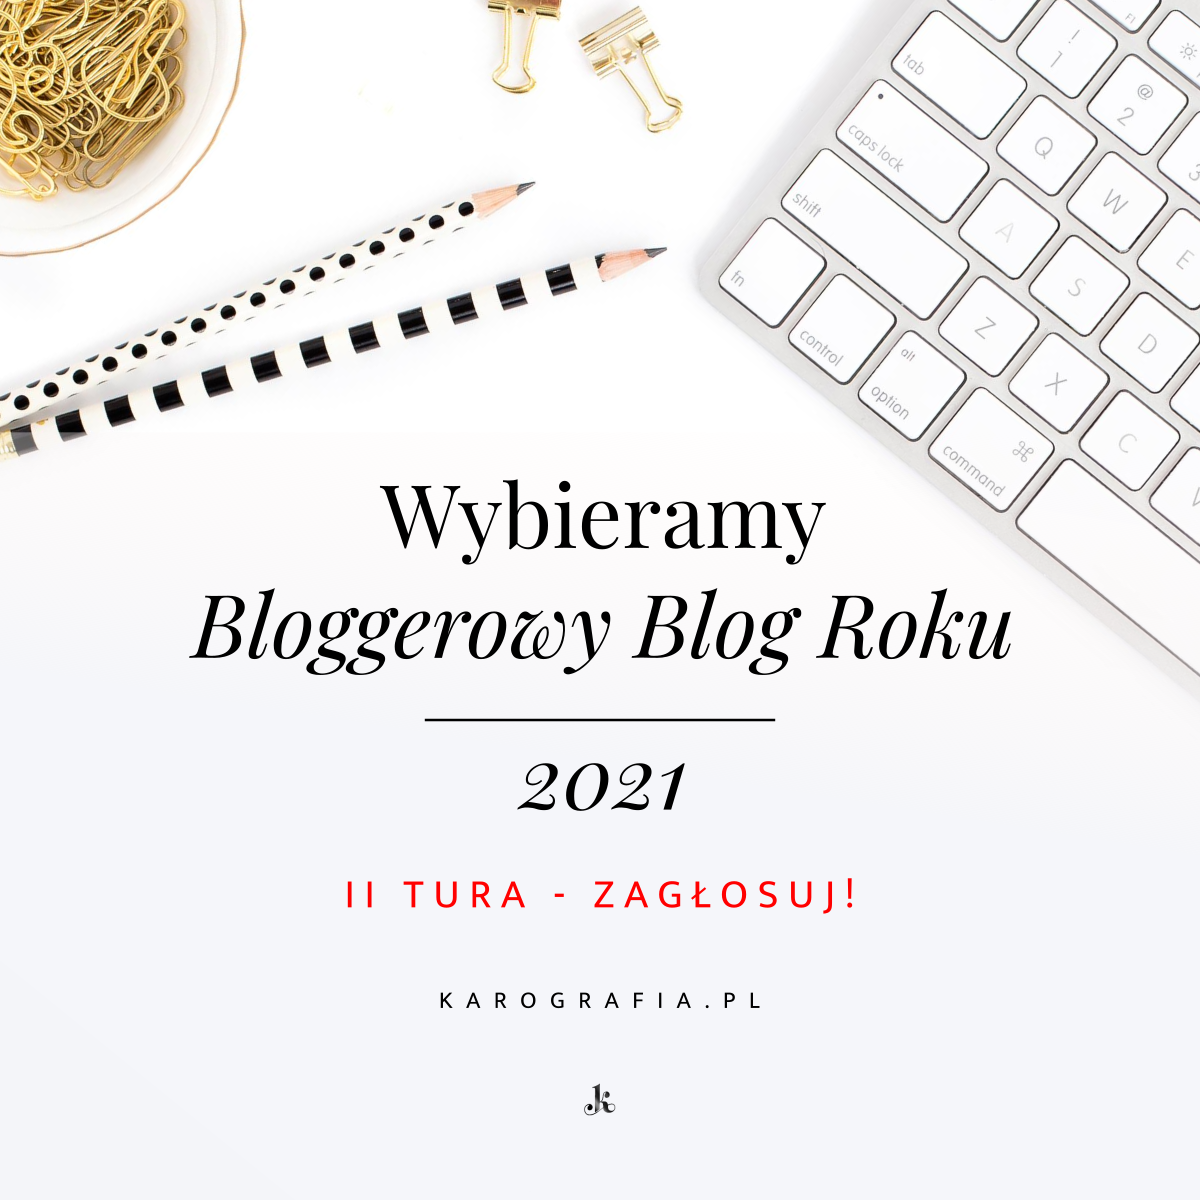 Bloggerowy Blog Roku 2021